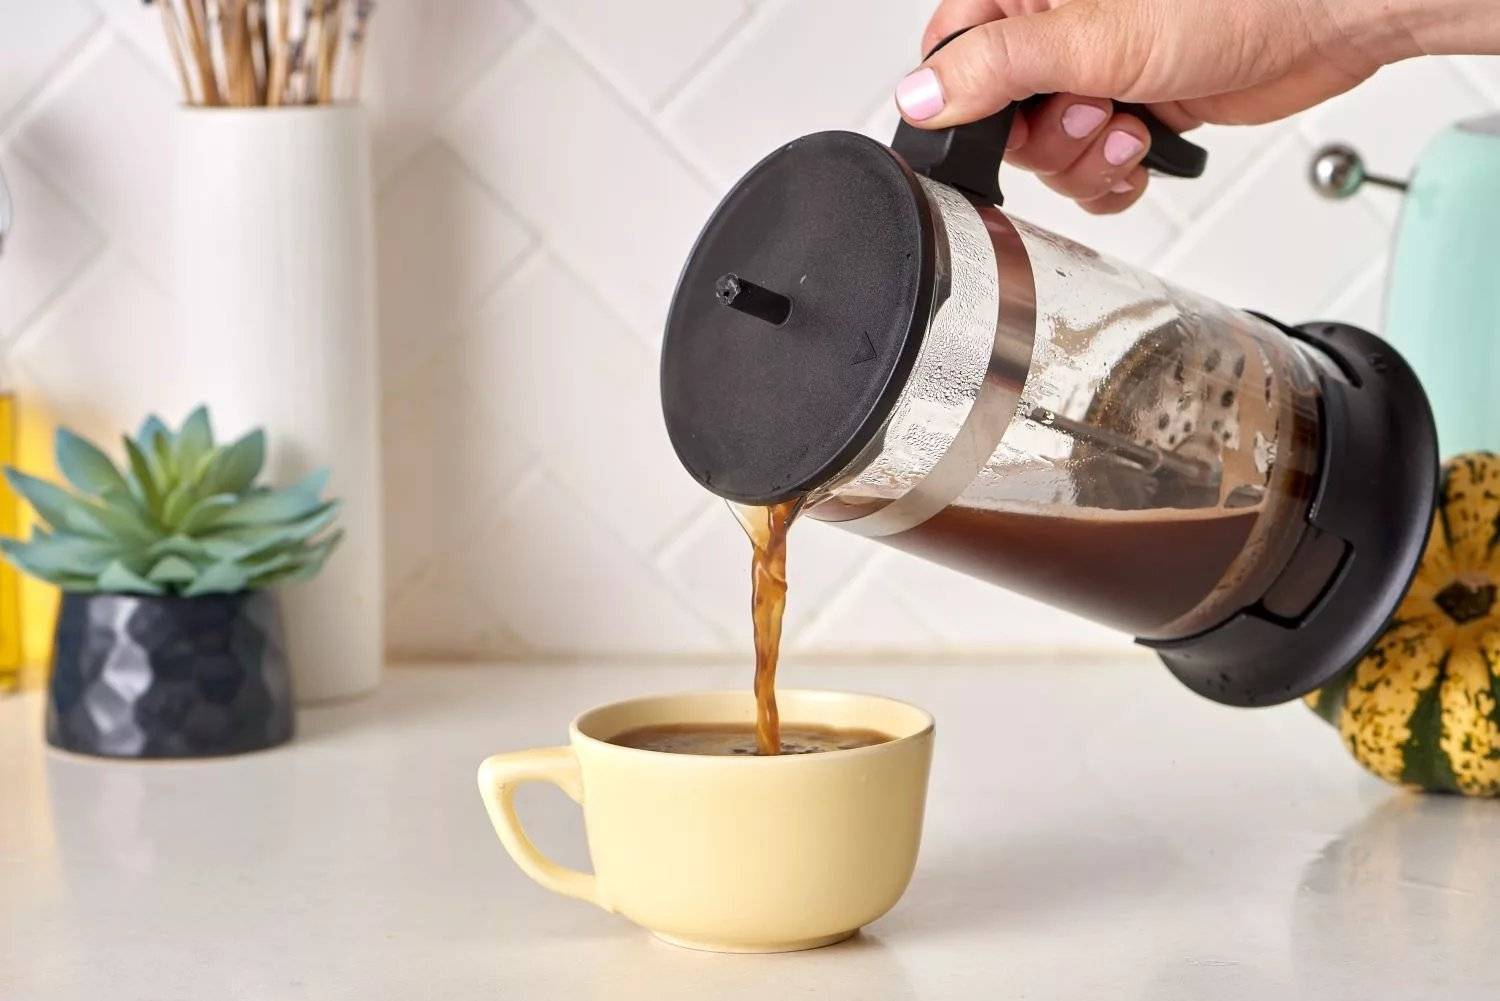 Как варить молотый кофе